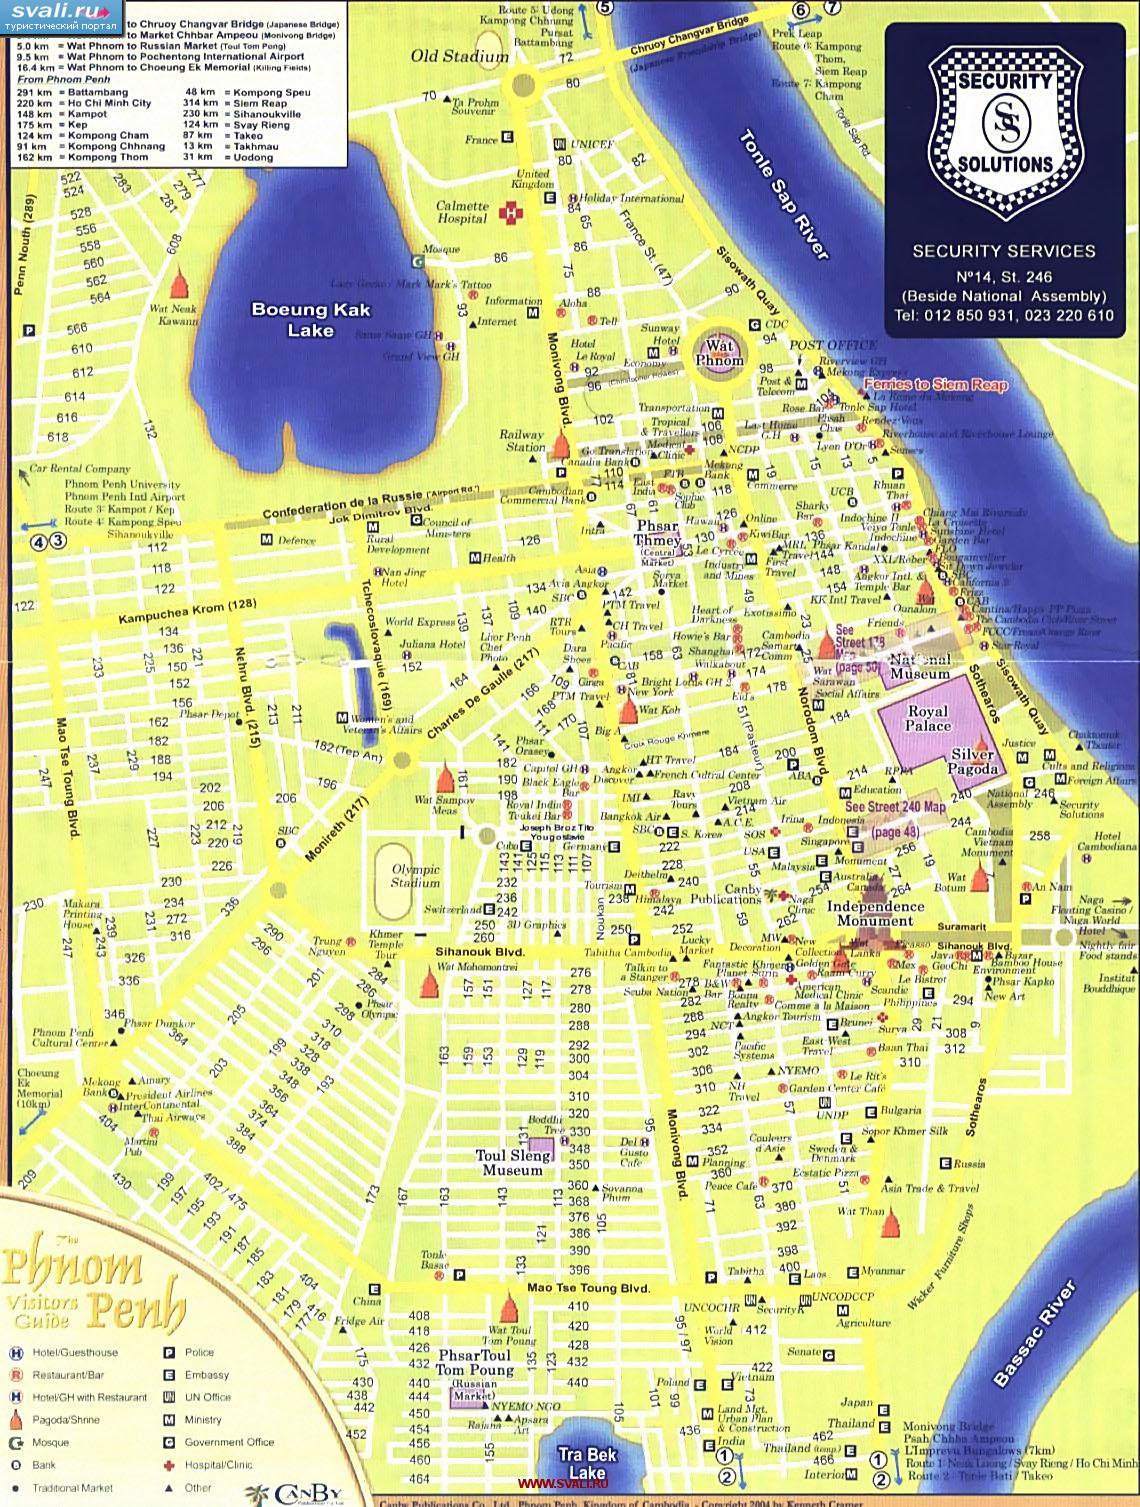 Подробная карта города Пном-Пень (Phnom Penh), столицы Камбоджи (англ.)